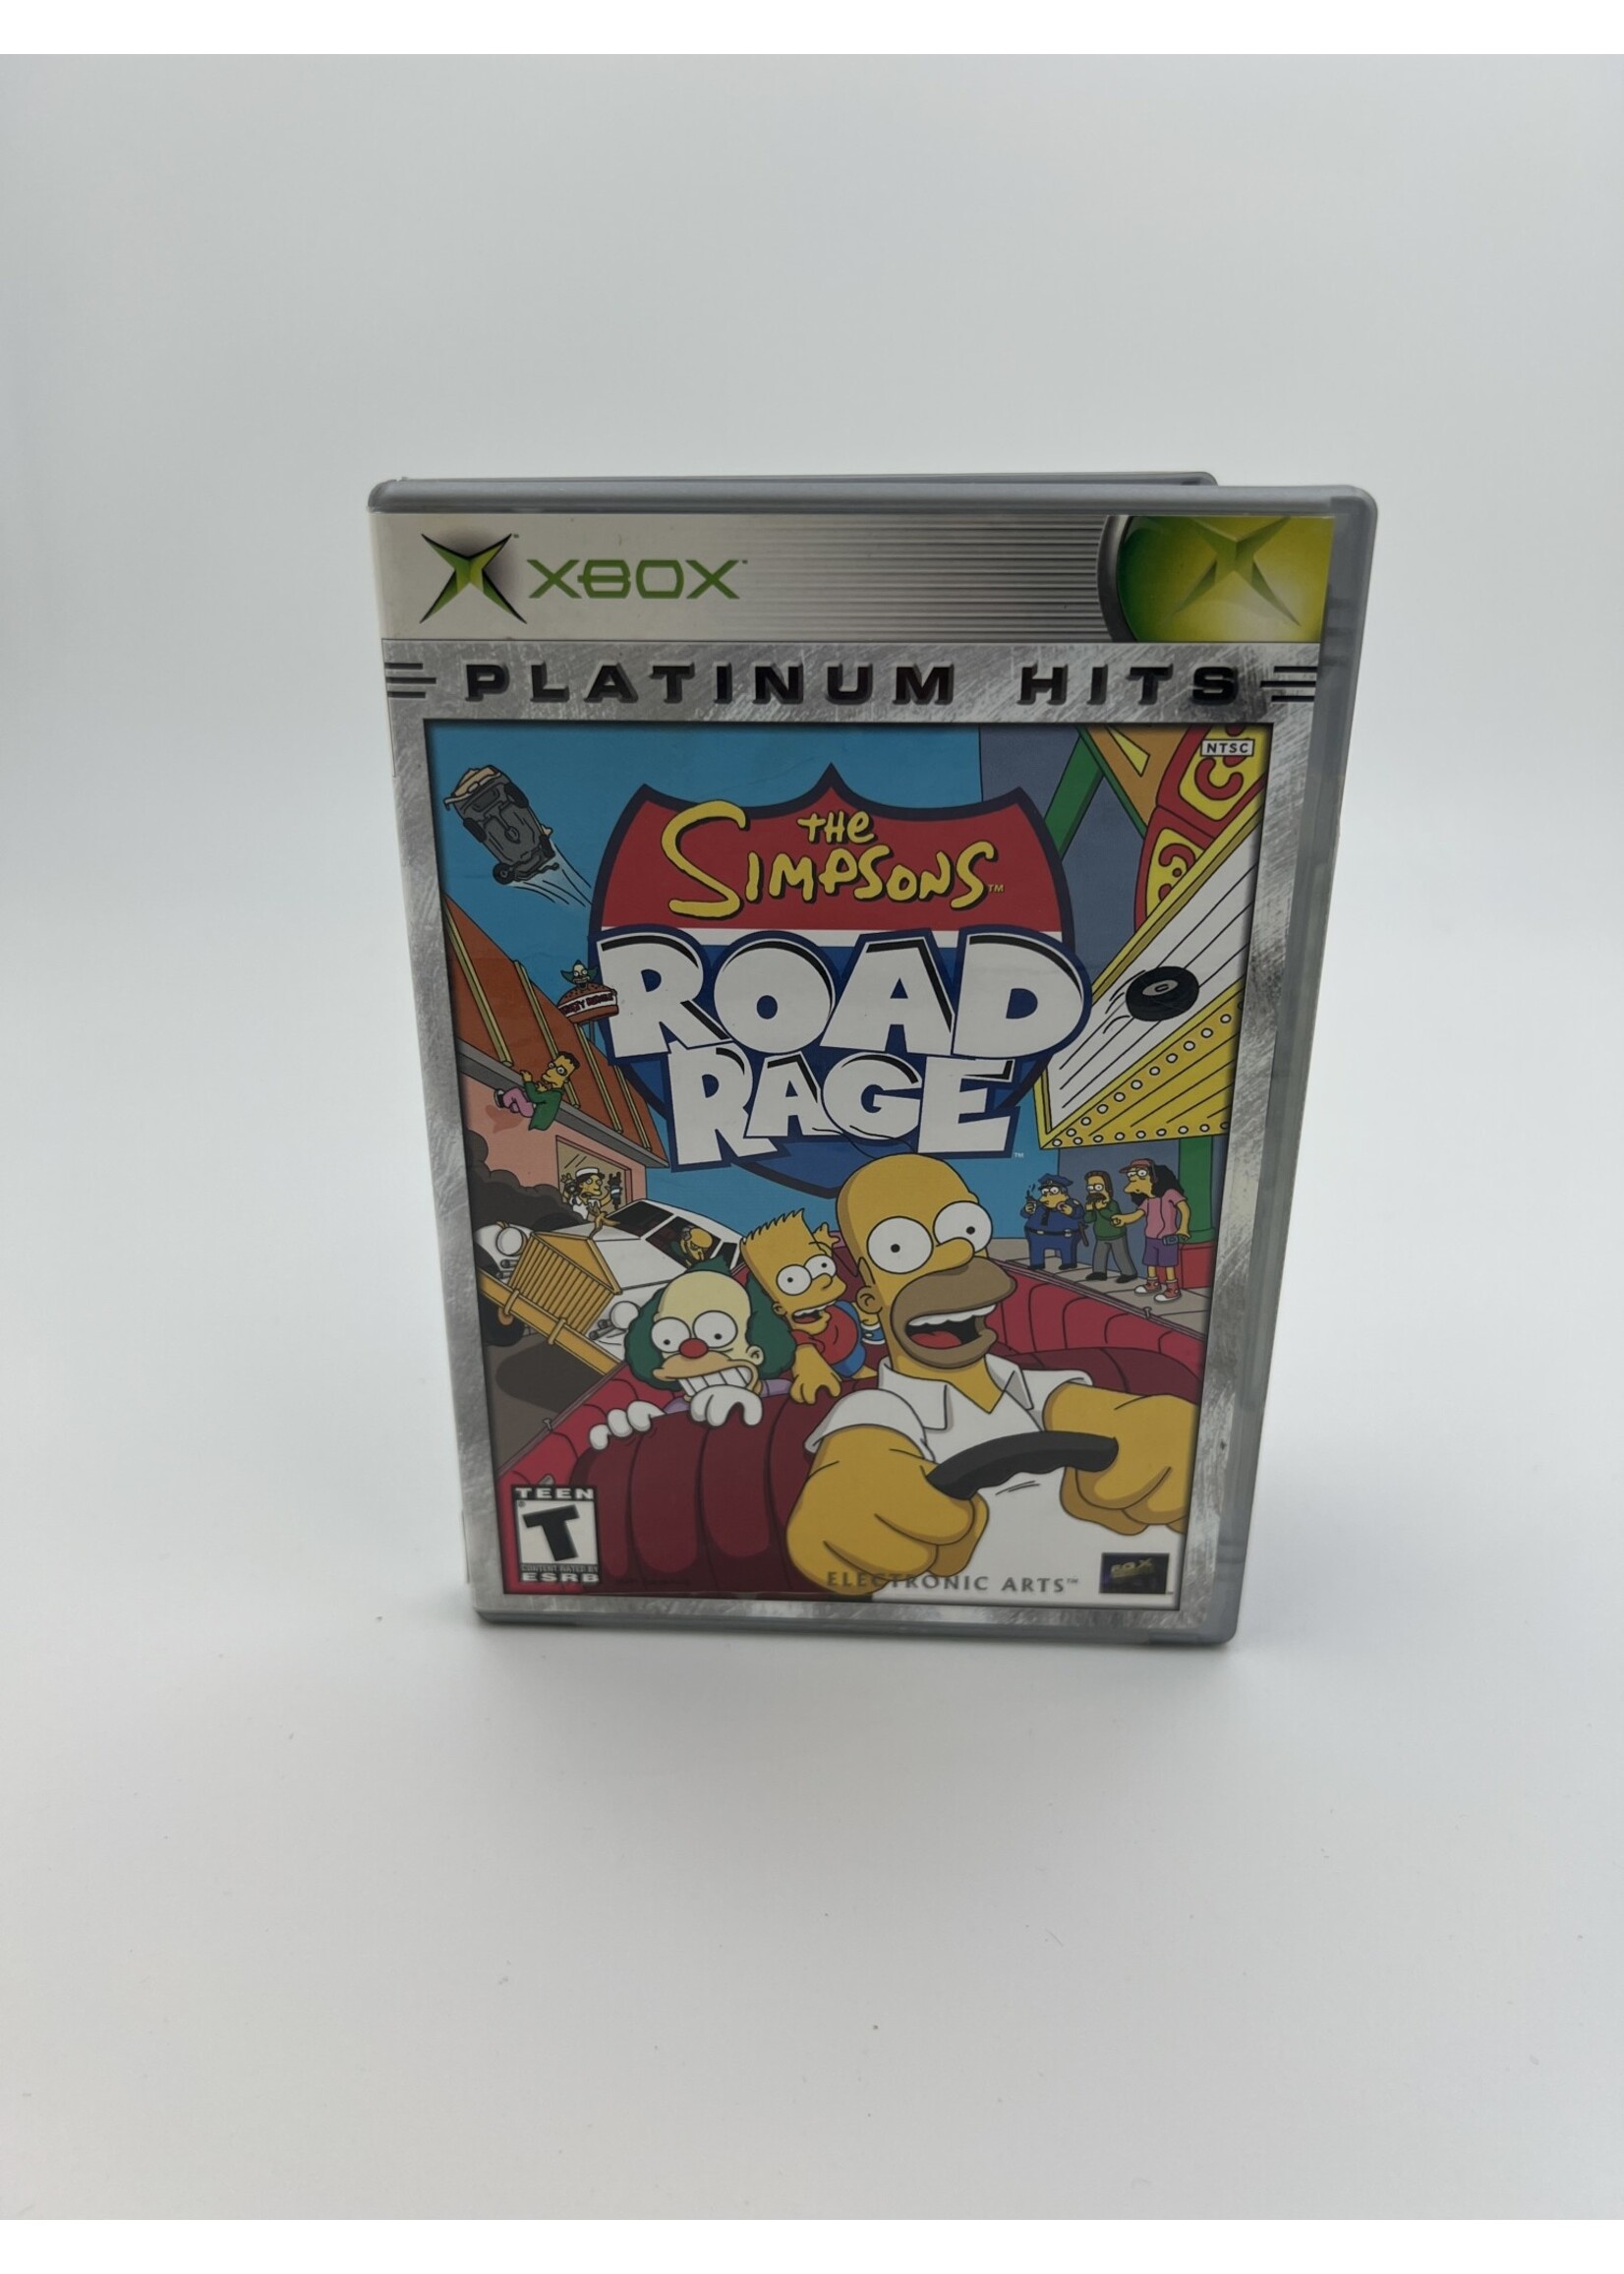 Xbox The Simpsons Road Rage Platinum Hits Xbox